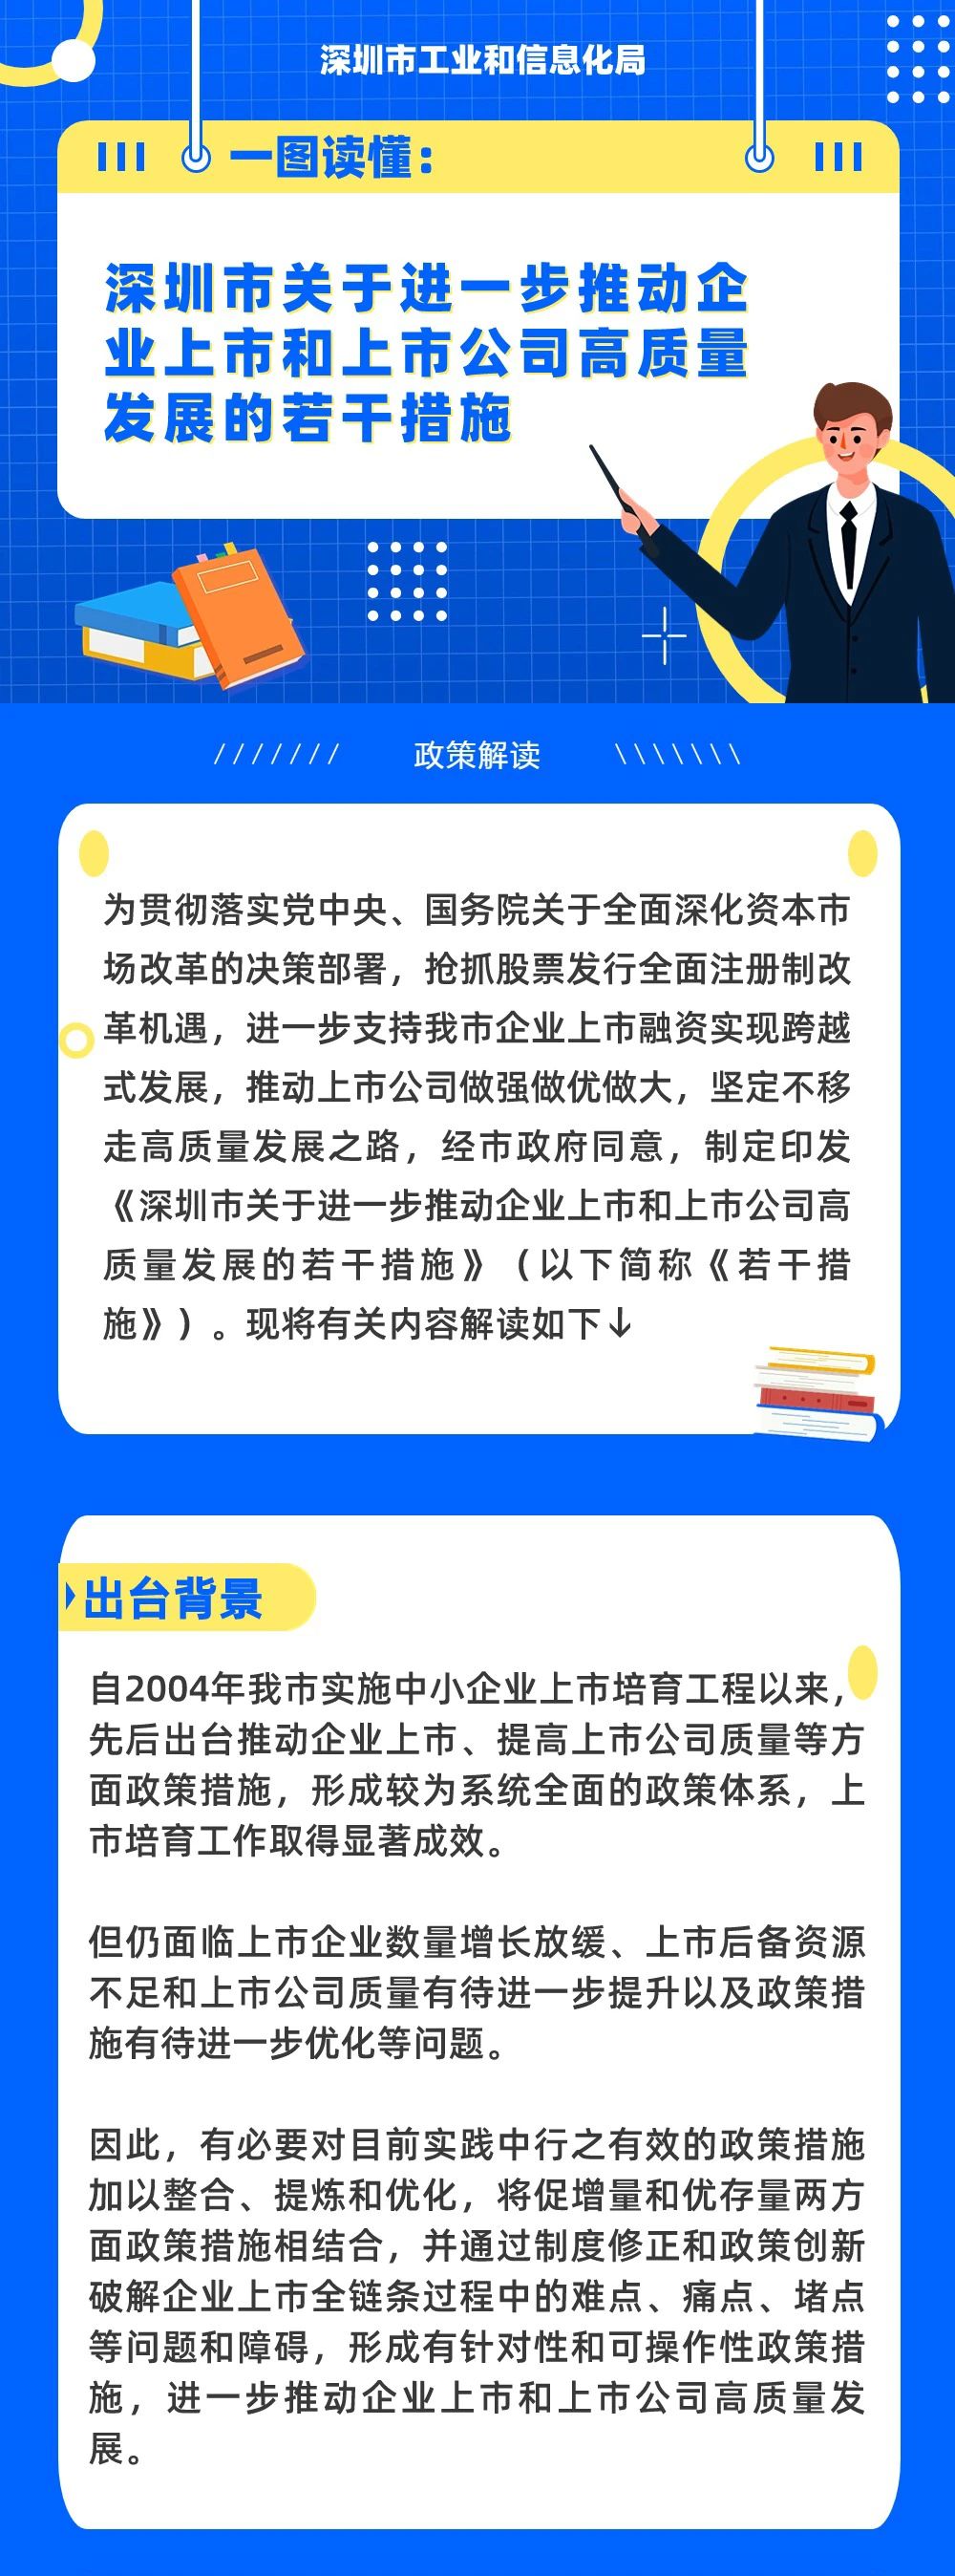 深圳：支持符合条件的企业到境外上市，支持优质红筹企业回归A股上市